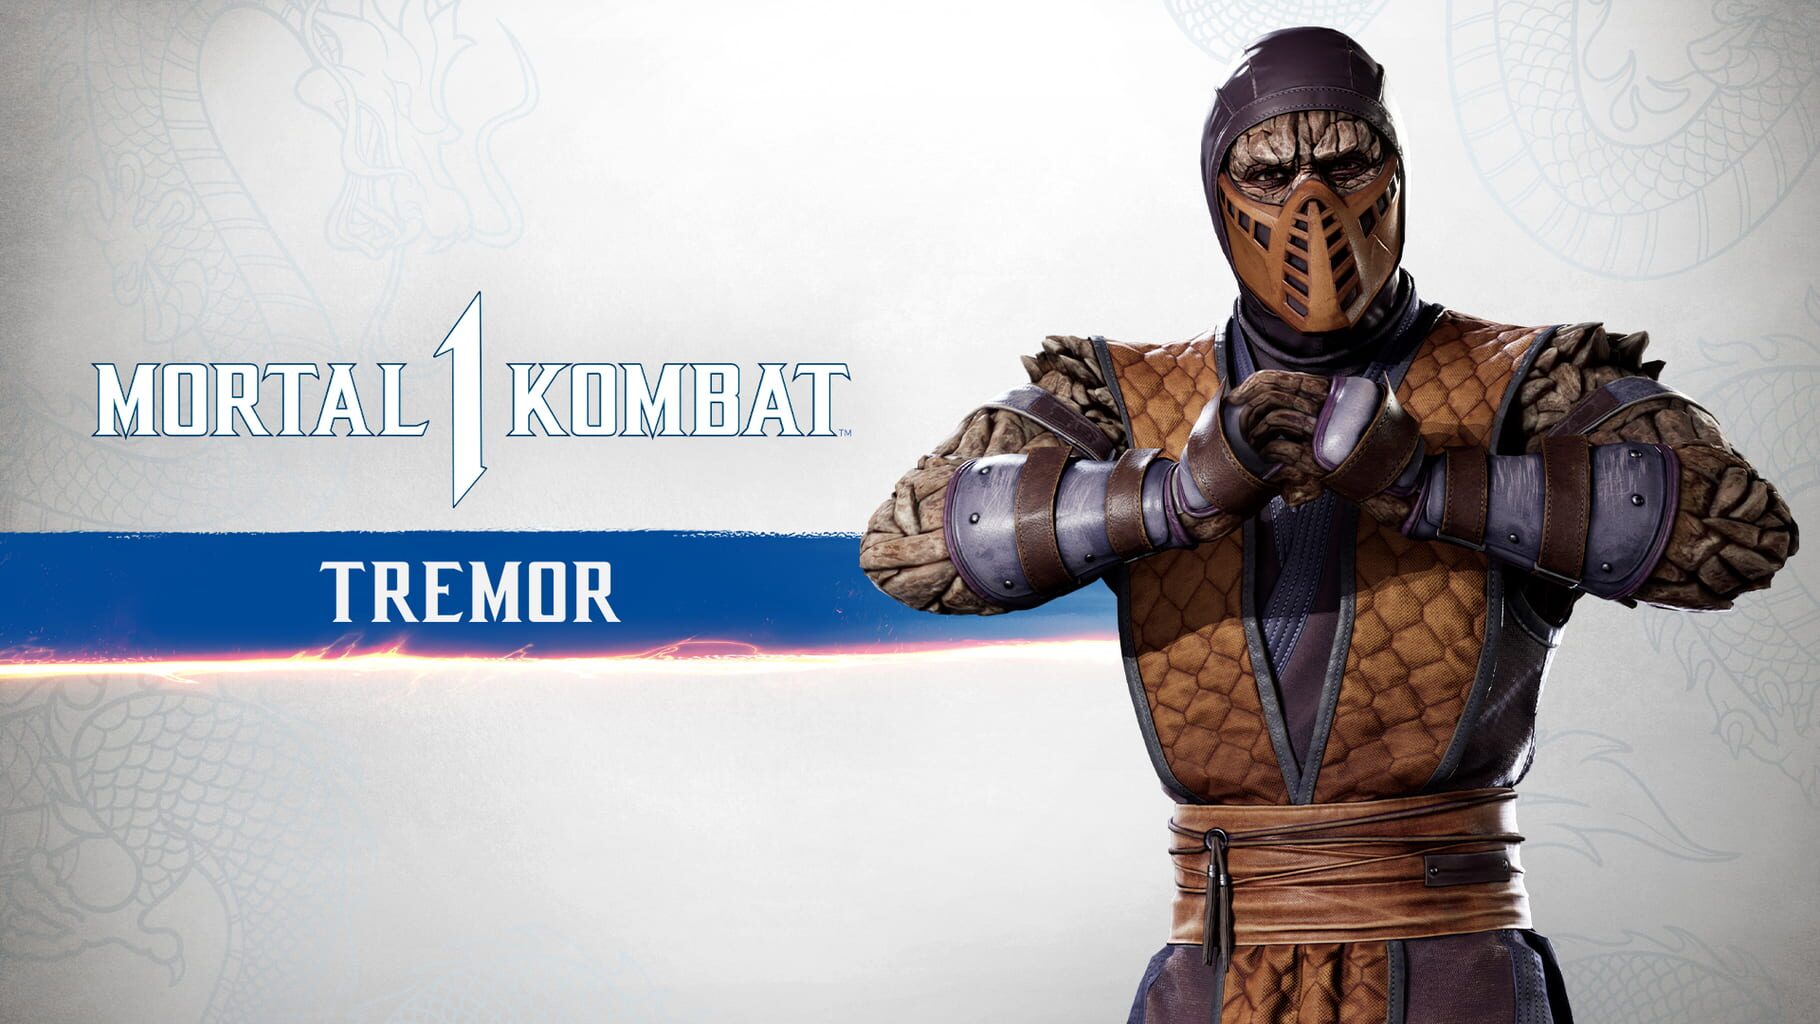 Mortal Kombat 1: Tremor Kameo artwork